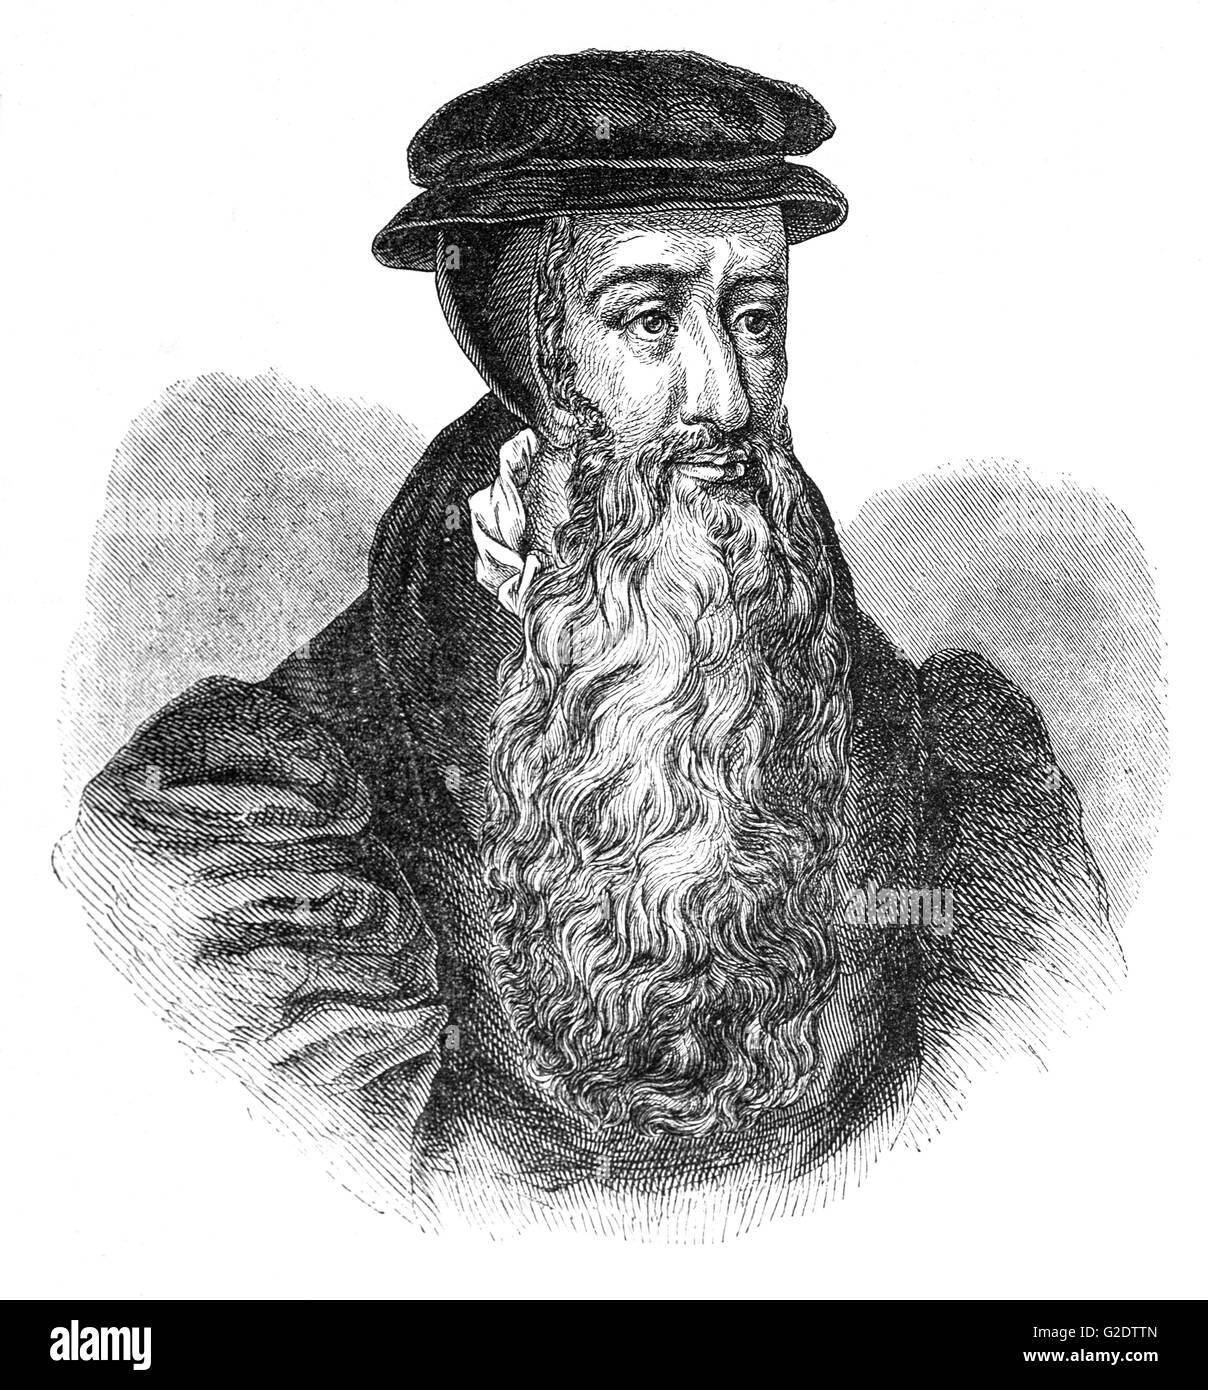 John Knox (1513 - 1572) era un ecclesiastico scozzese, teologo e scrittore che era un leader della Riforma Protestante ed è considerato il fondatore della denominazione Presbiteriana in Scozia. Foto Stock